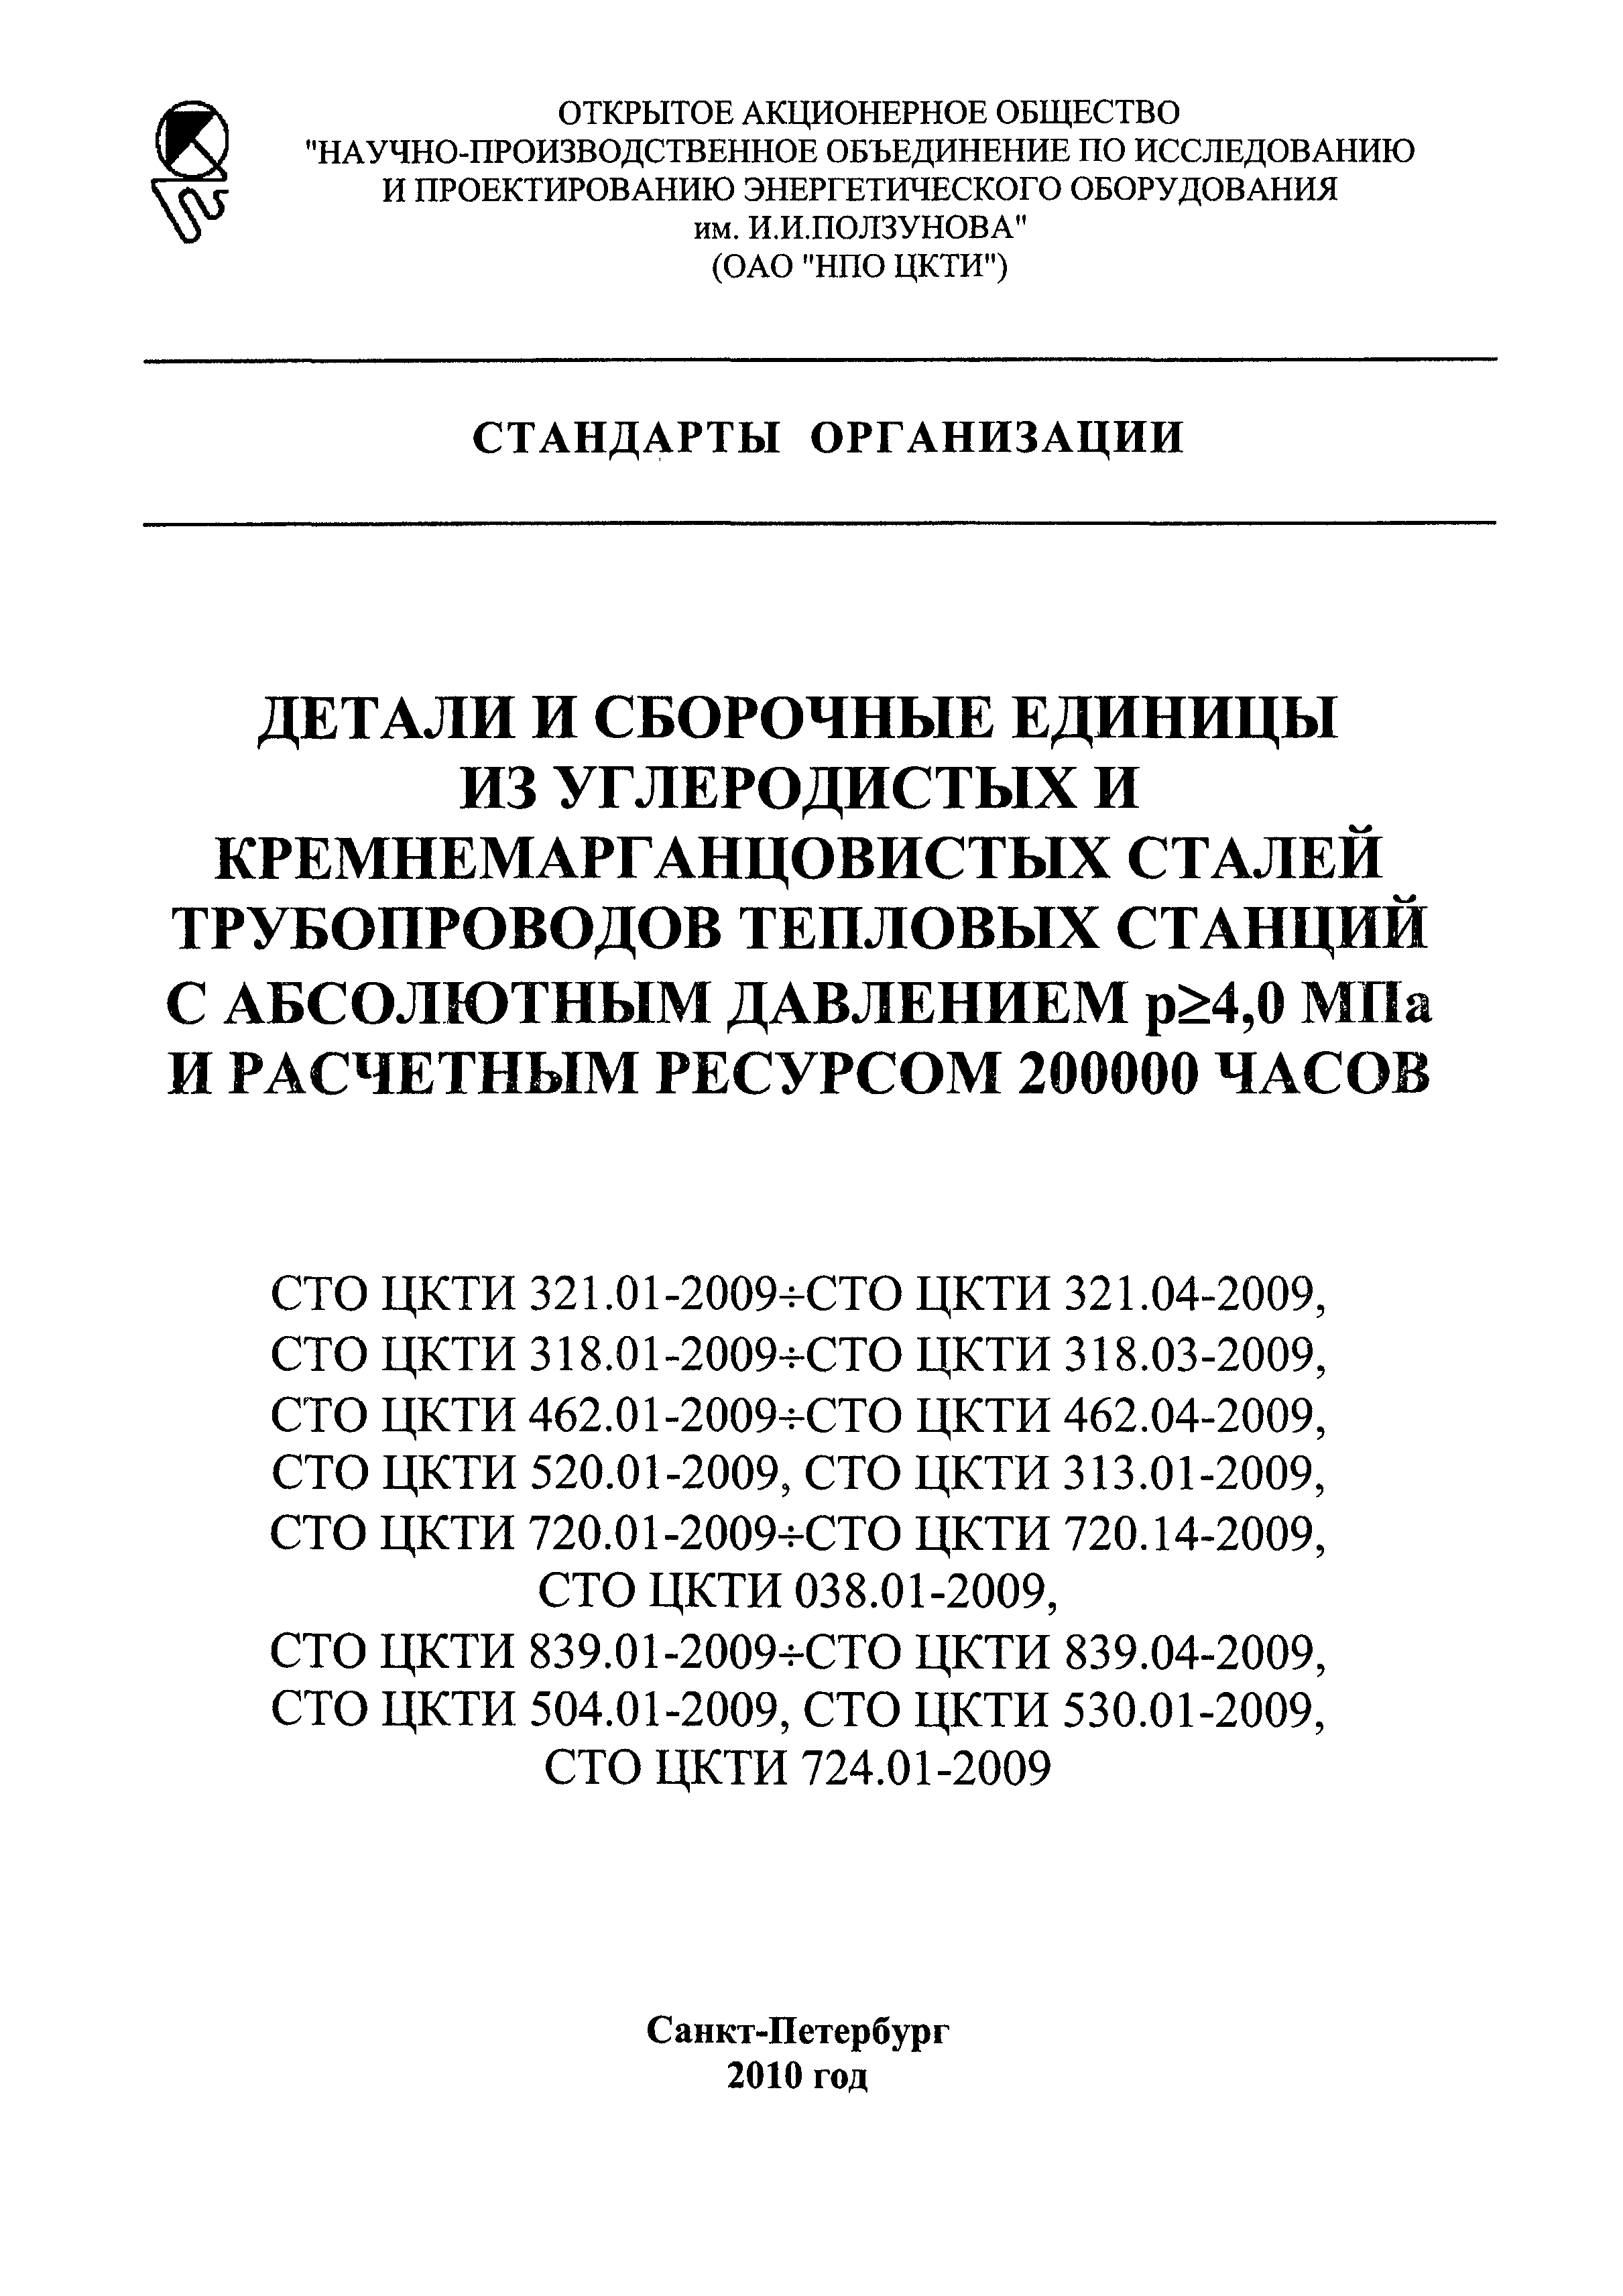 СТО ЦКТИ 720.04-2009